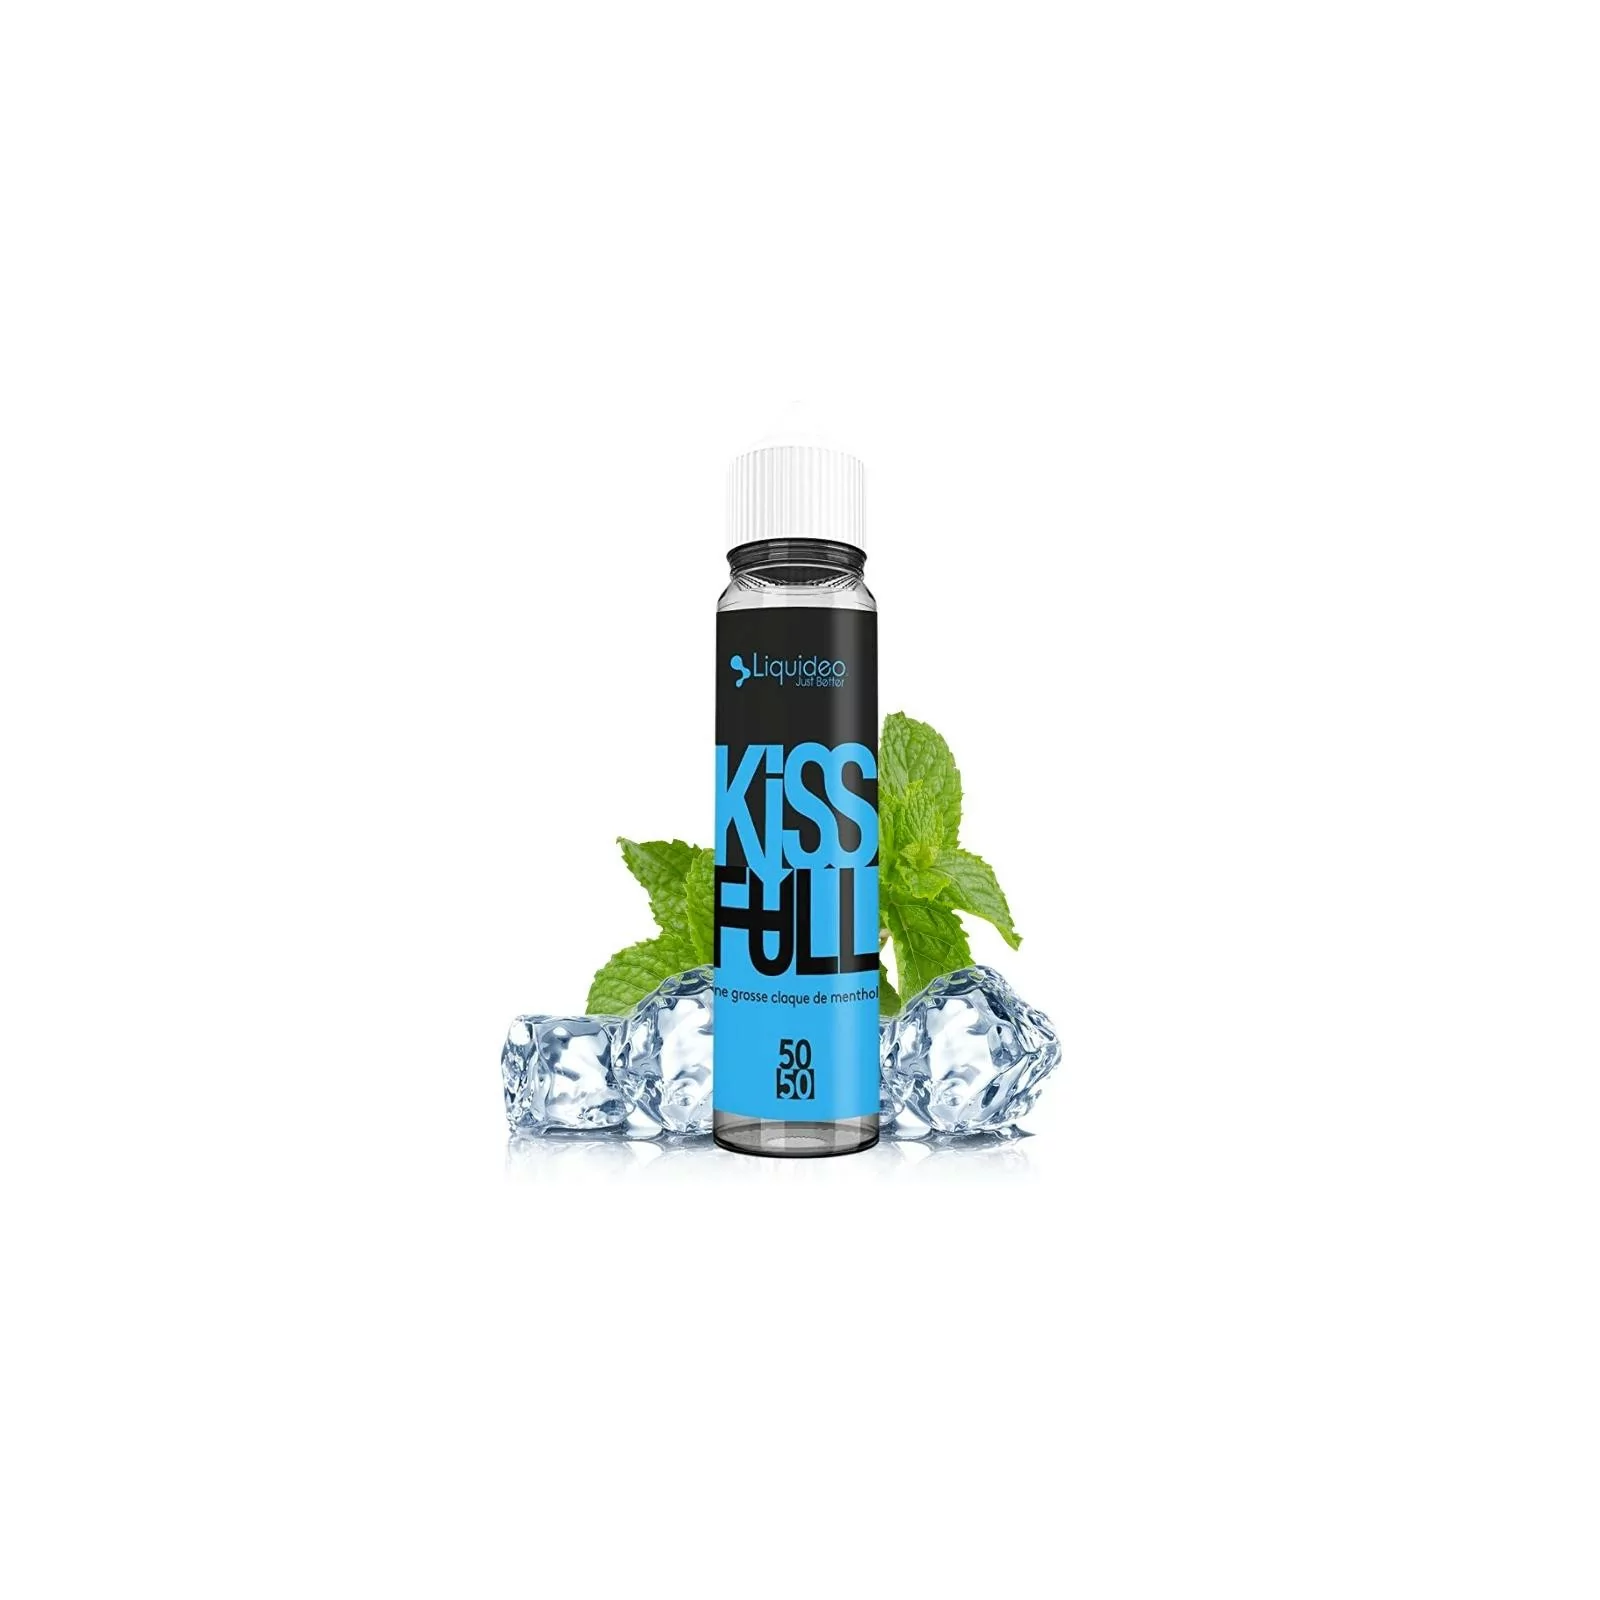 Kiss Full 50ml - Liquideo Fifty